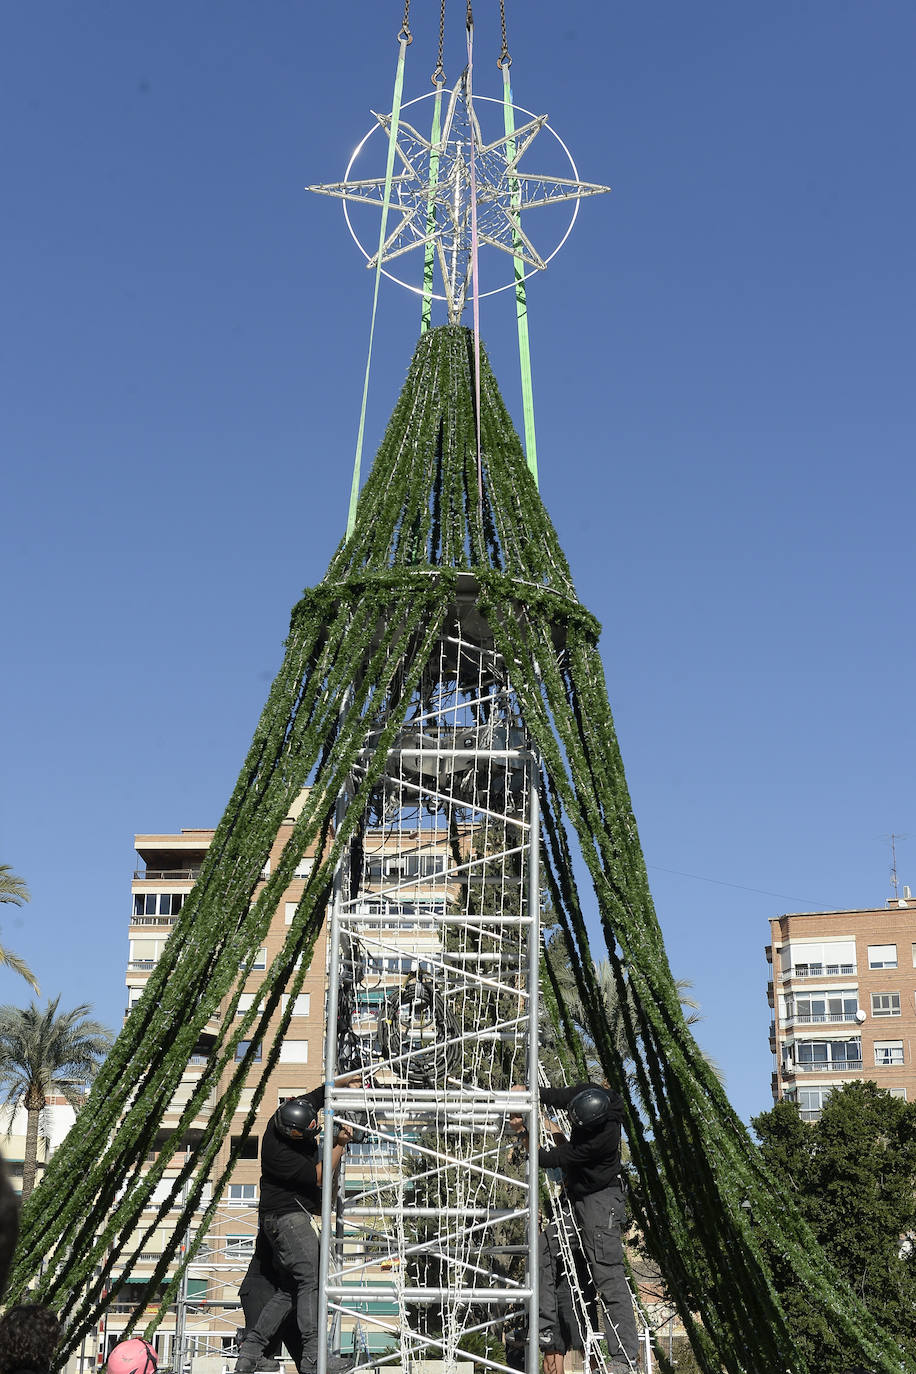 Fotos: Presentación del árbol de Navidad en la plaza Circular de Murcia